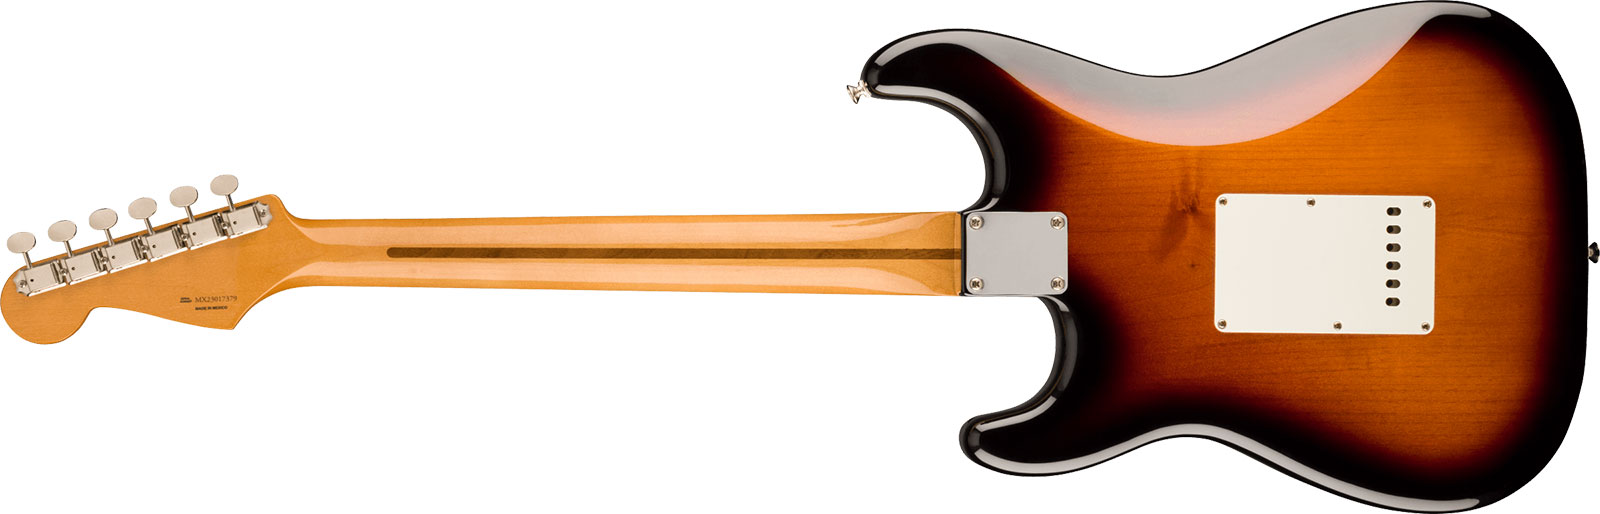 Fender Strat 50s Vintera 2 Mex 3s Trem Mn - 2-color Sunburst - E-Gitarre in Str-Form - Variation 1